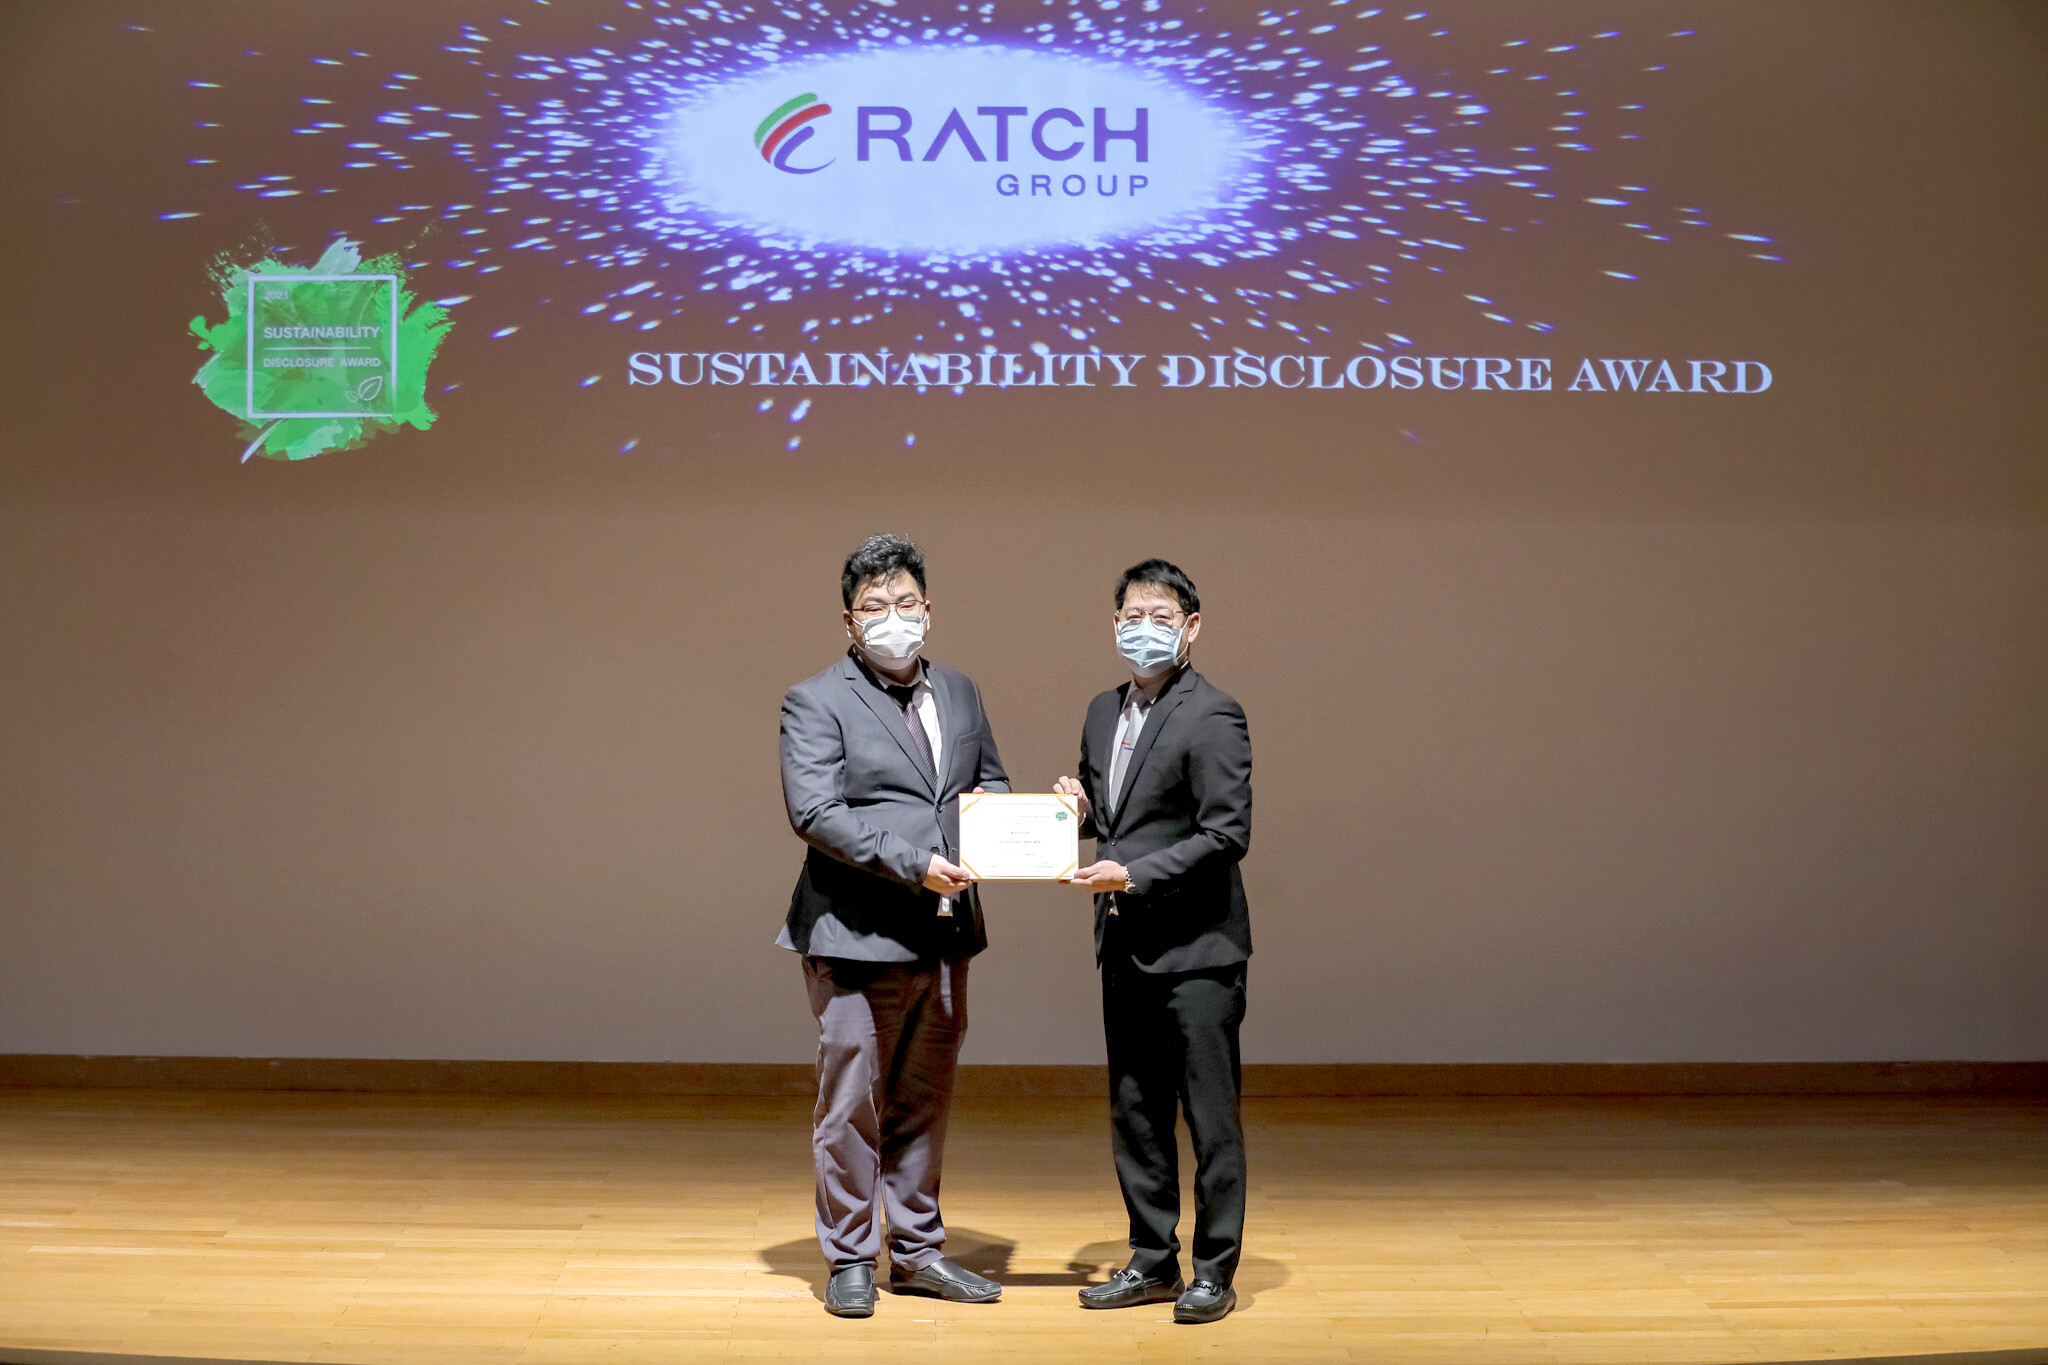 ราช กรุ๊ป รับรางวัลเกียรติคุณ "Sustainability Disclosure Award" จากสถาบันไทยพัฒน์ 3 ปีต่อเนื่อง สะท้อนจุดยืนการดำเนินธุรกิจอย่างโปร่งใส